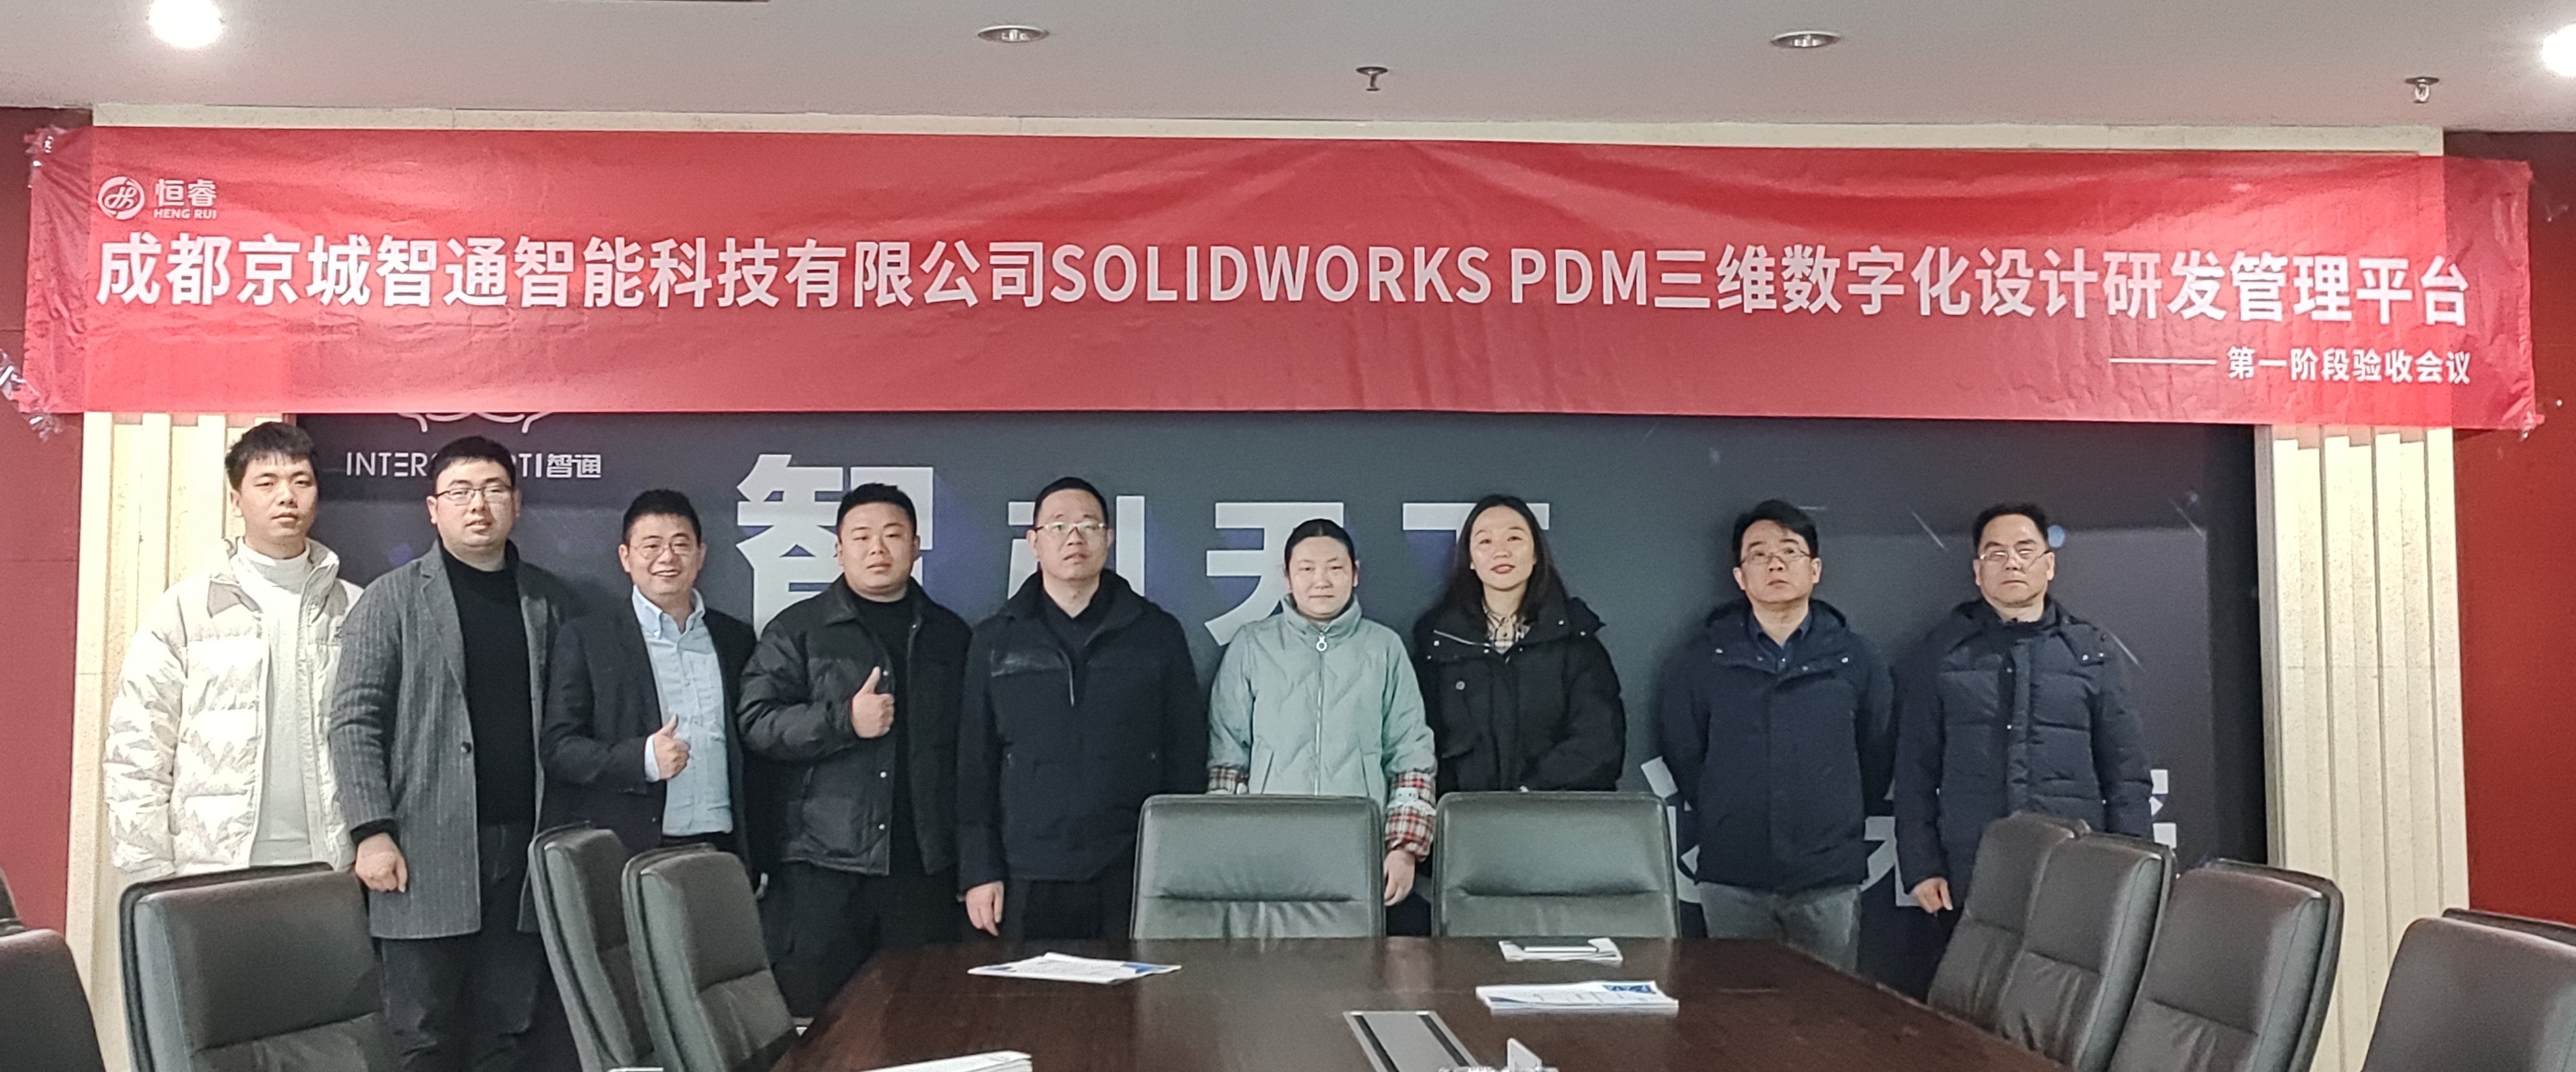 京城智通SOLIDWORKS PDM三维数字化设计研发管理平台项目一阶段顺利验收